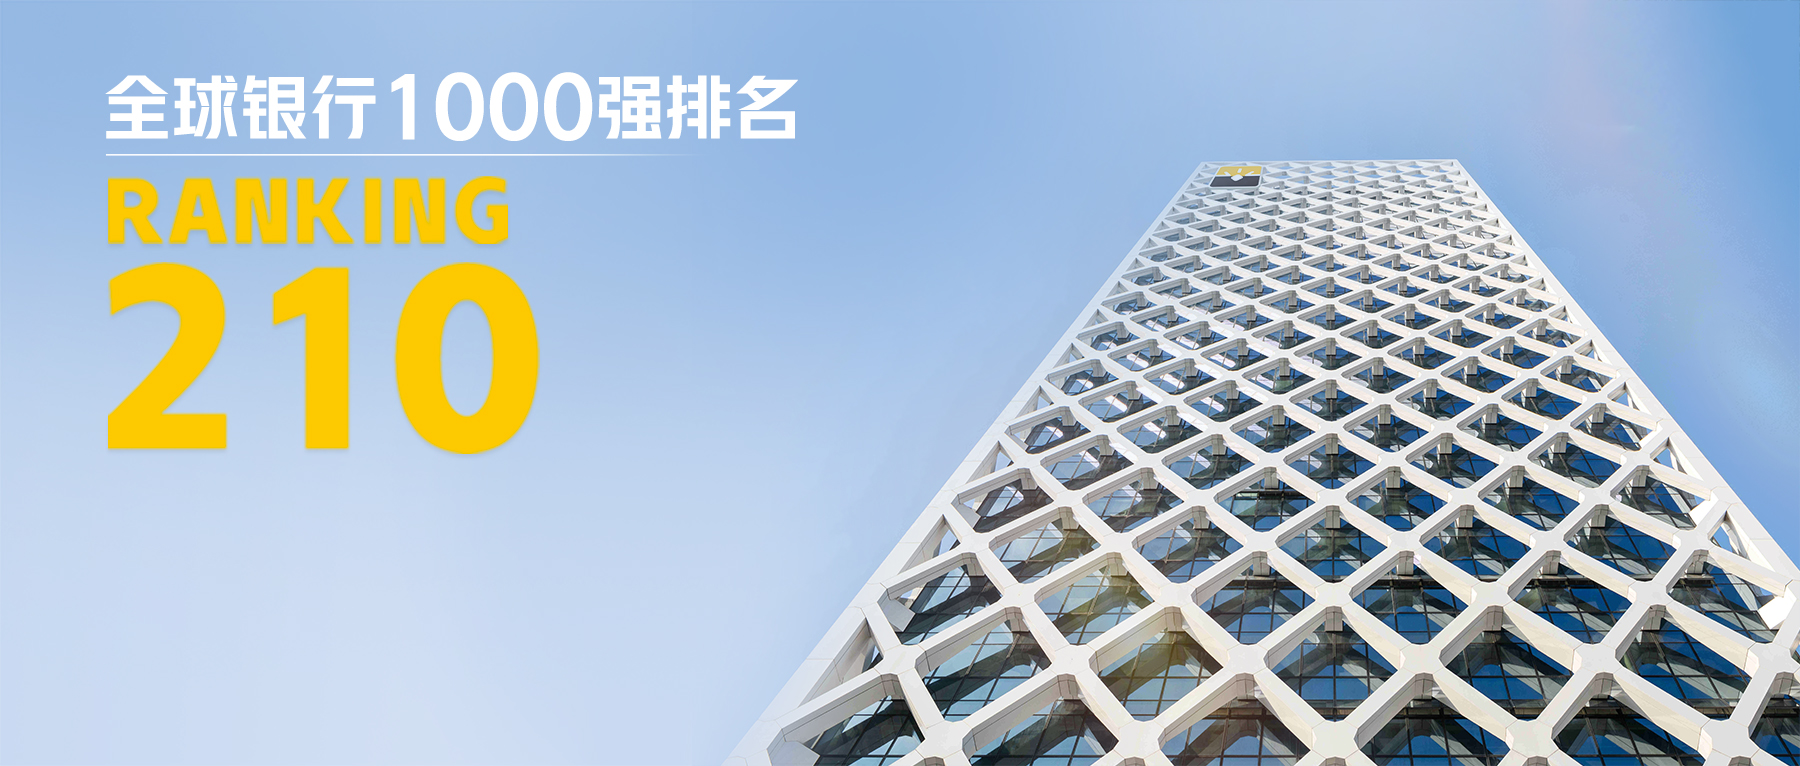 深圳农商银行位列“全球银行1000强”第210位